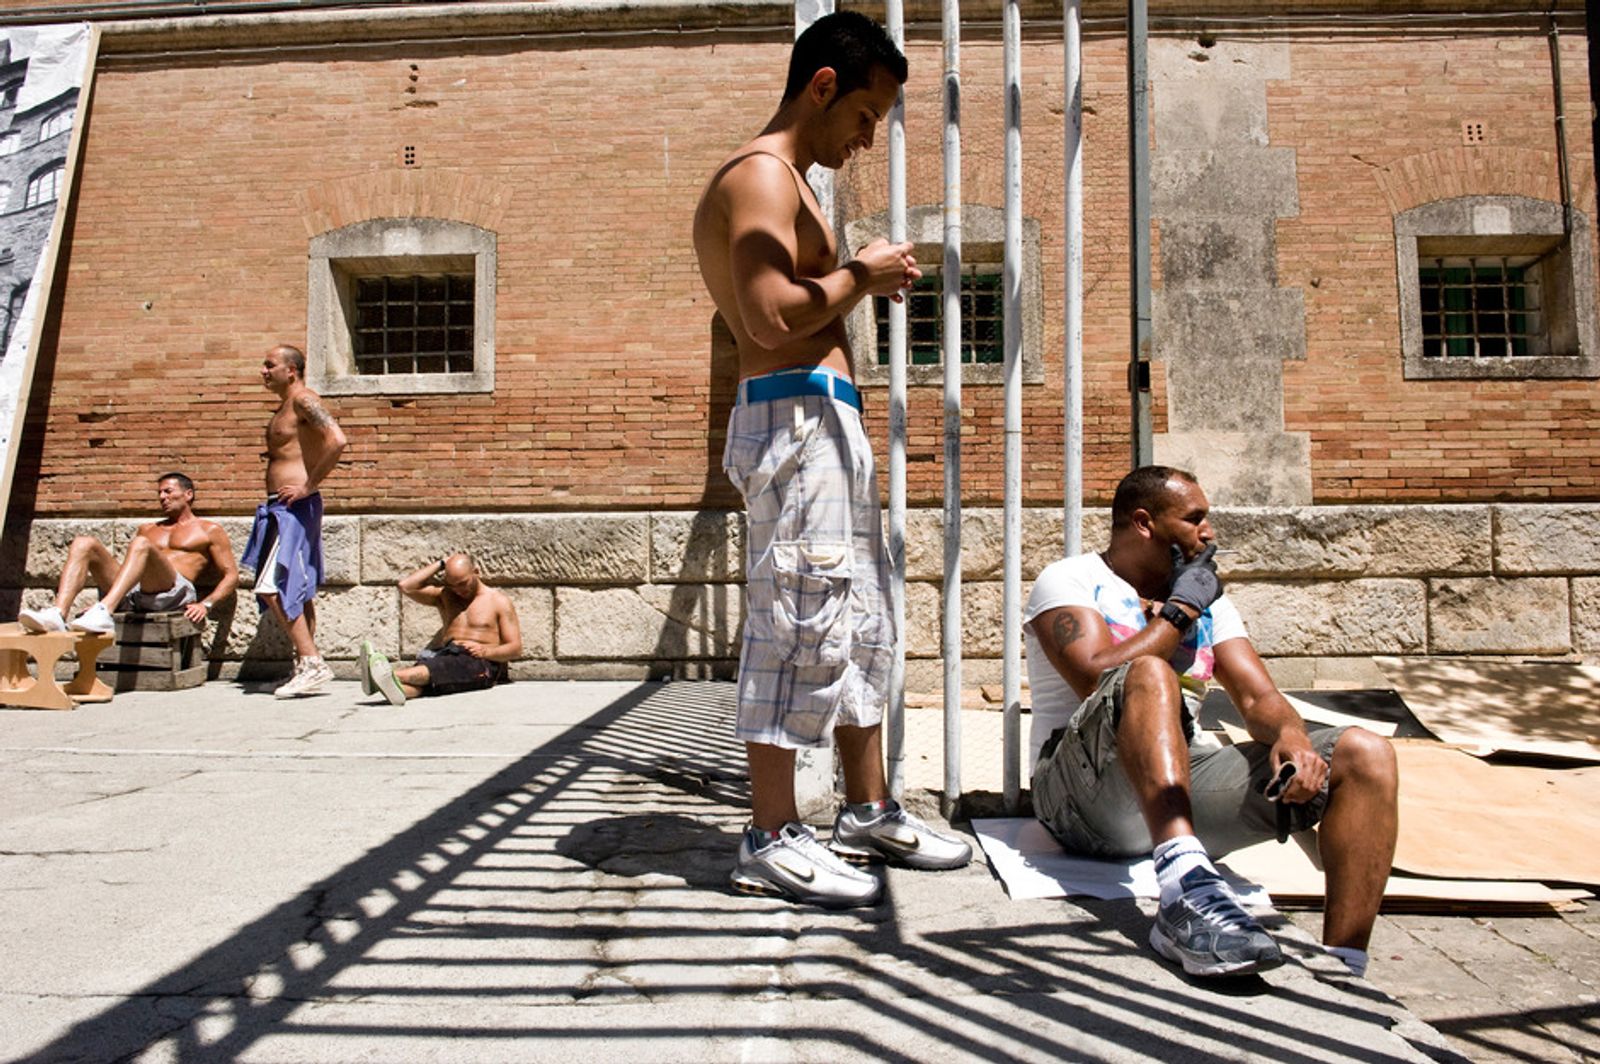 © Clara Vannucci - Volterra Maximum Security Prison, Italy. Compagnia della Fortezza. Prisoners chilling in the courtyard.